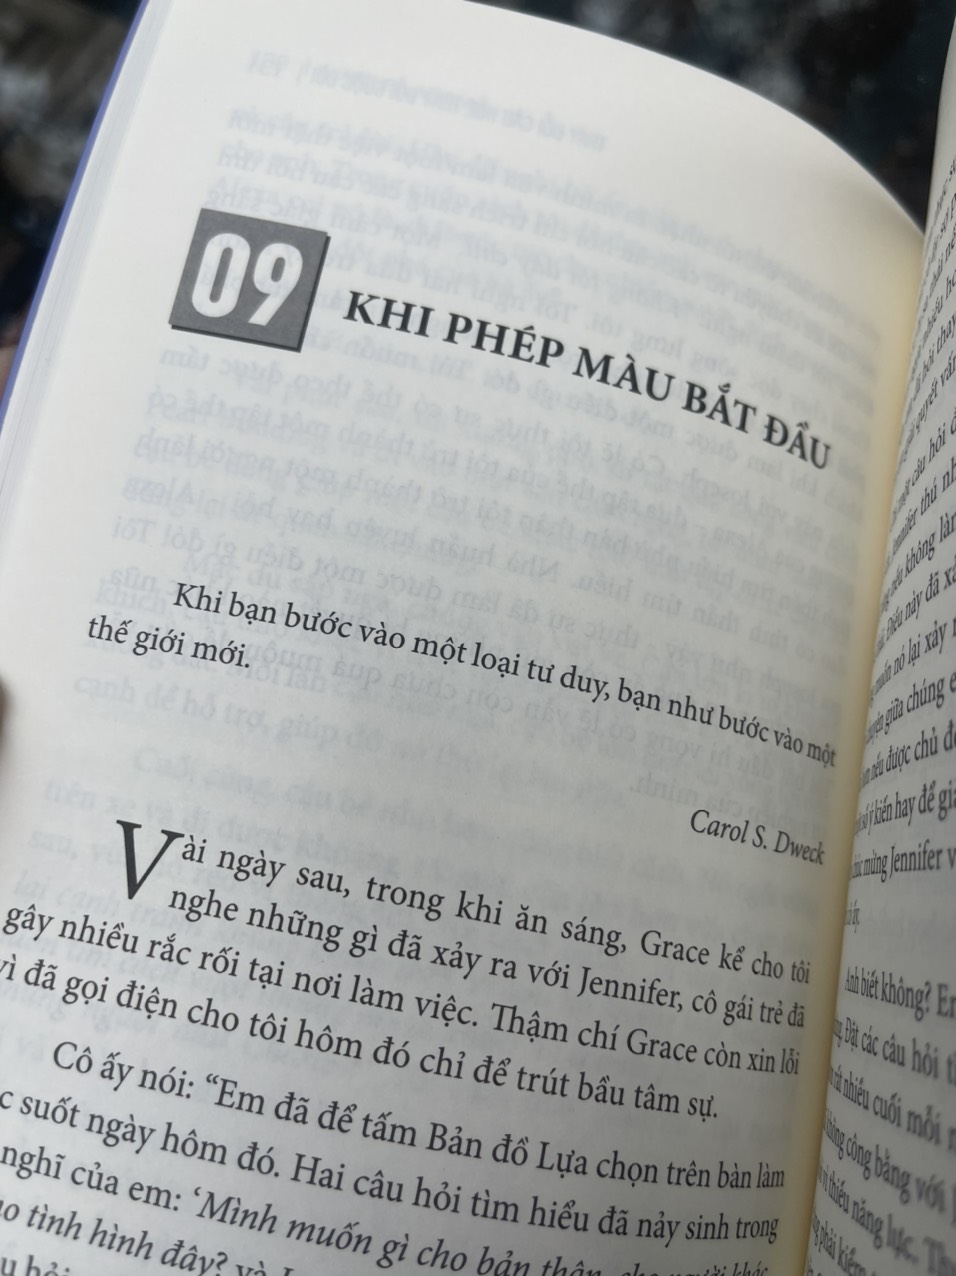 THAY ĐỔI CÂU HỎI THAY ĐỔI CUỘC ĐỜI – Marilee Adams – Tân Việt Books – NXB Lao Động (bìa mềm)